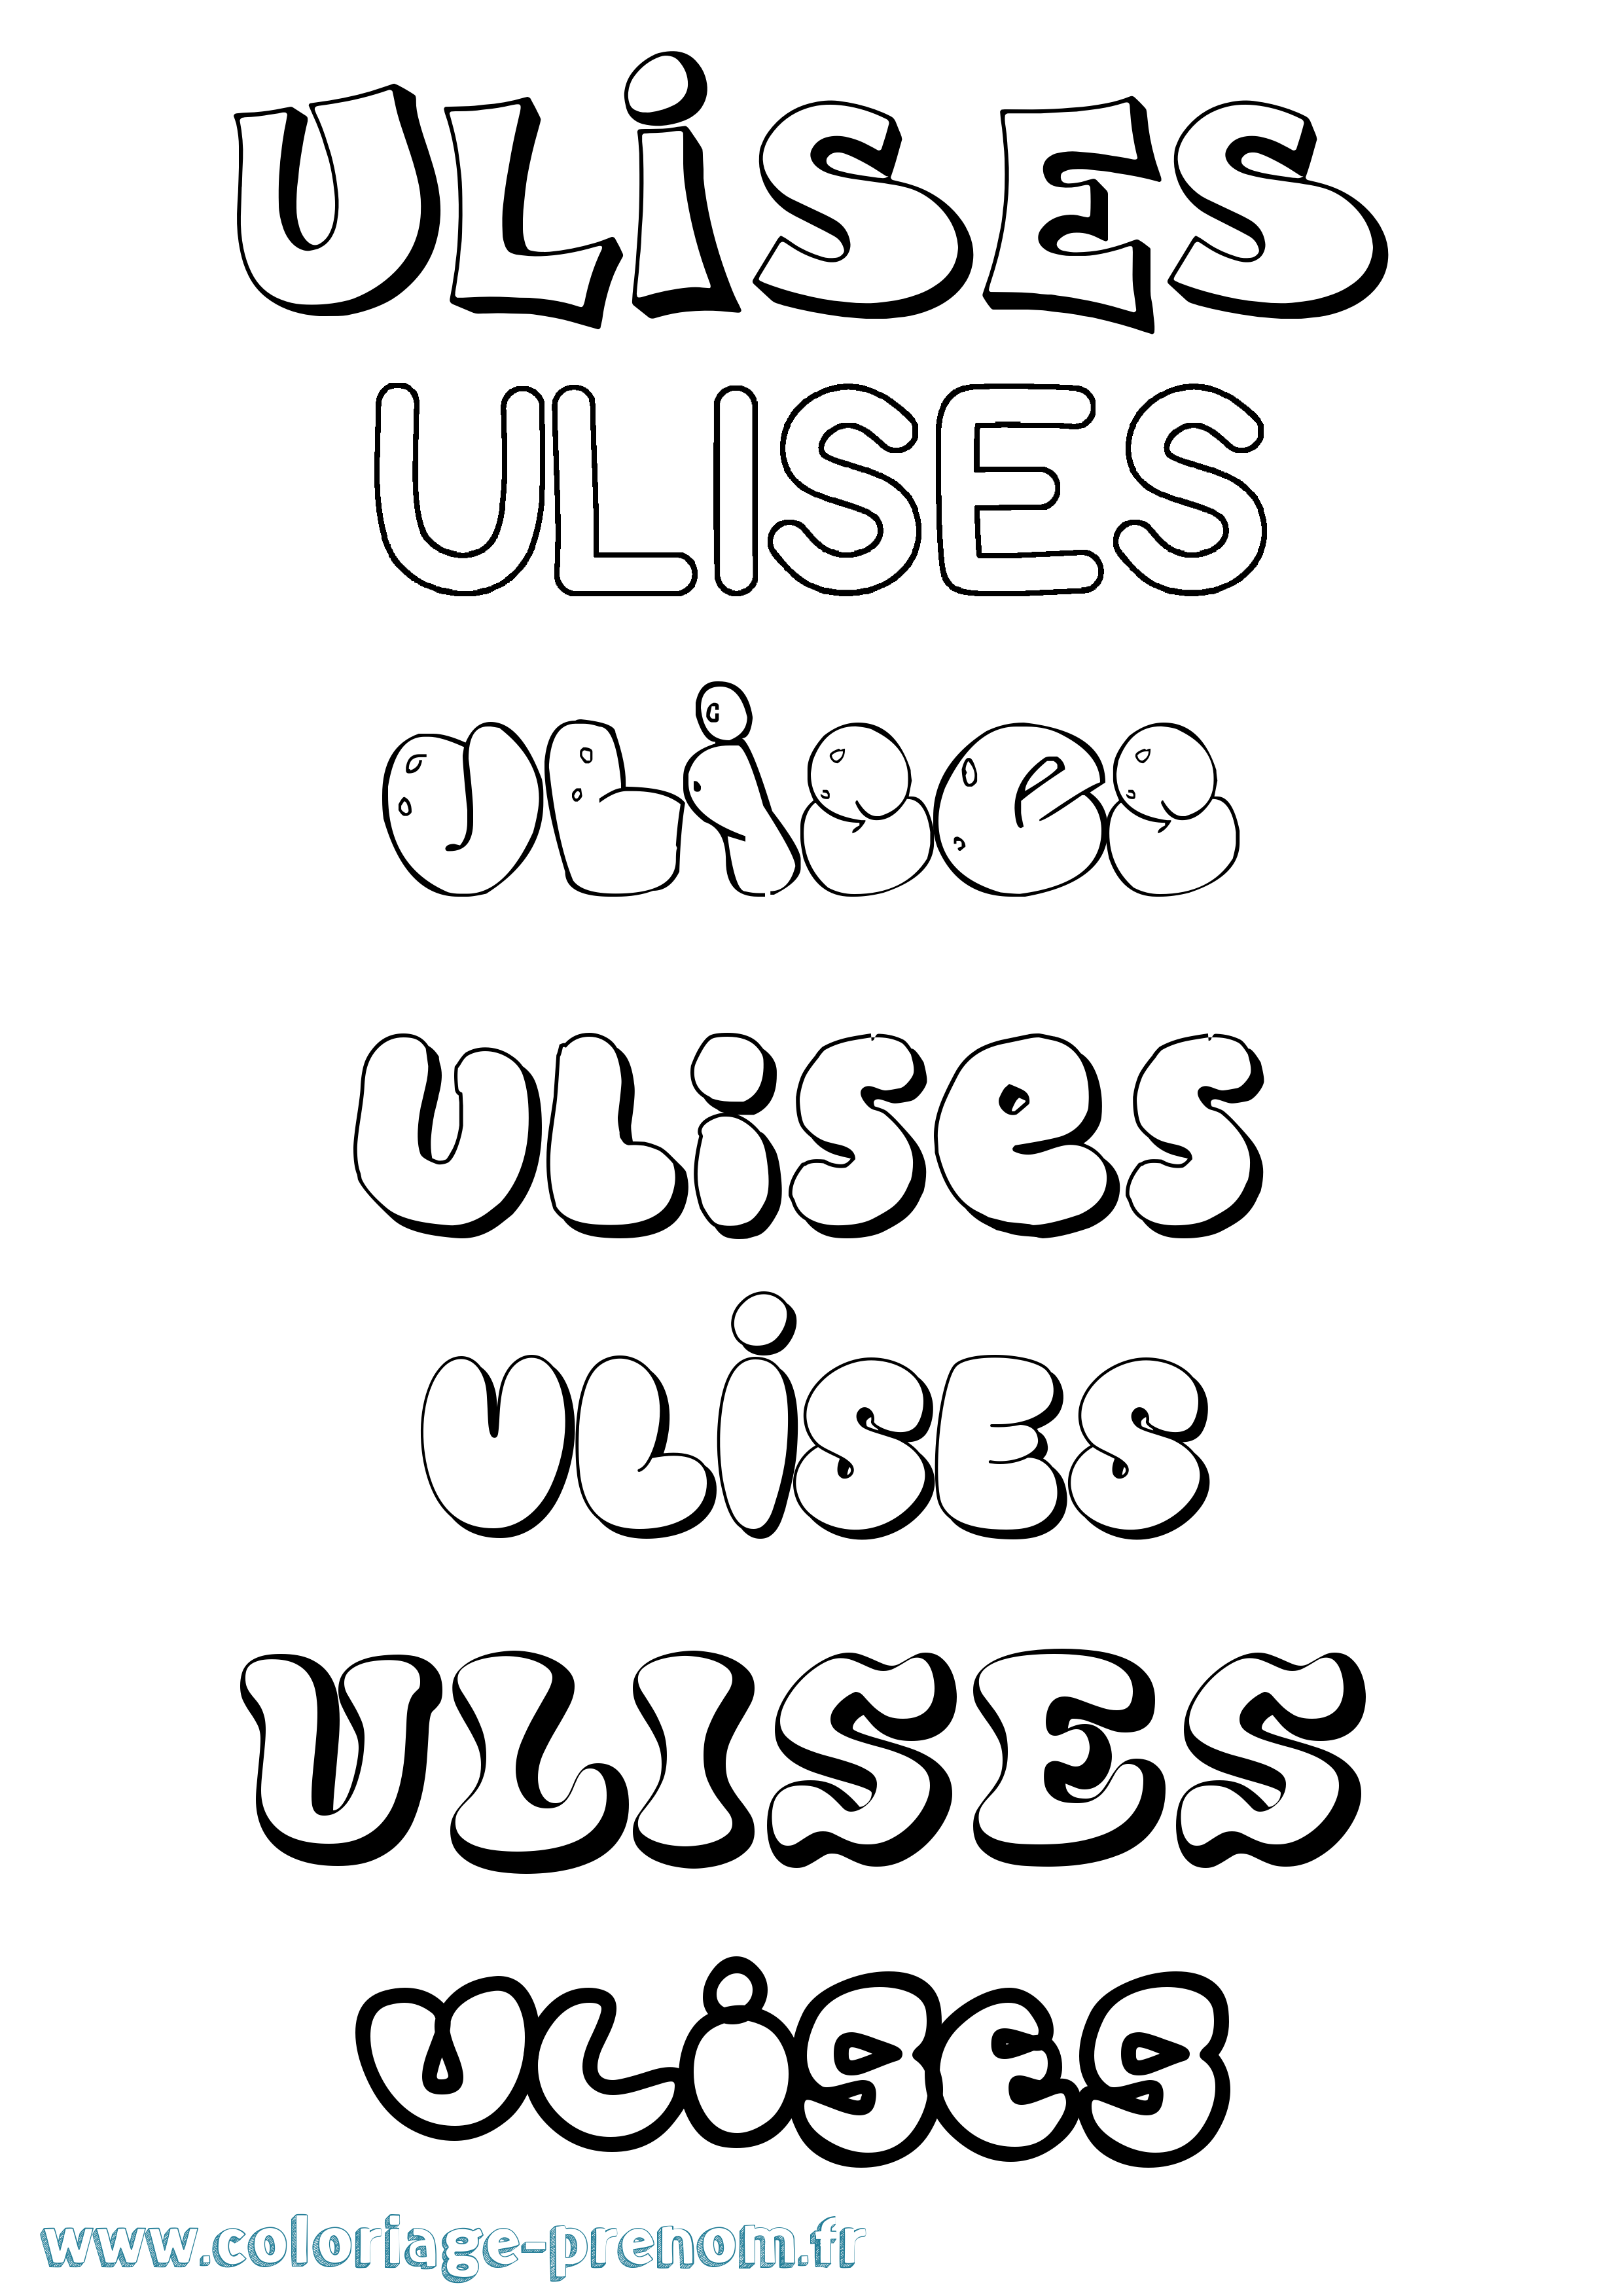 Coloriage prénom Ulises Bubble